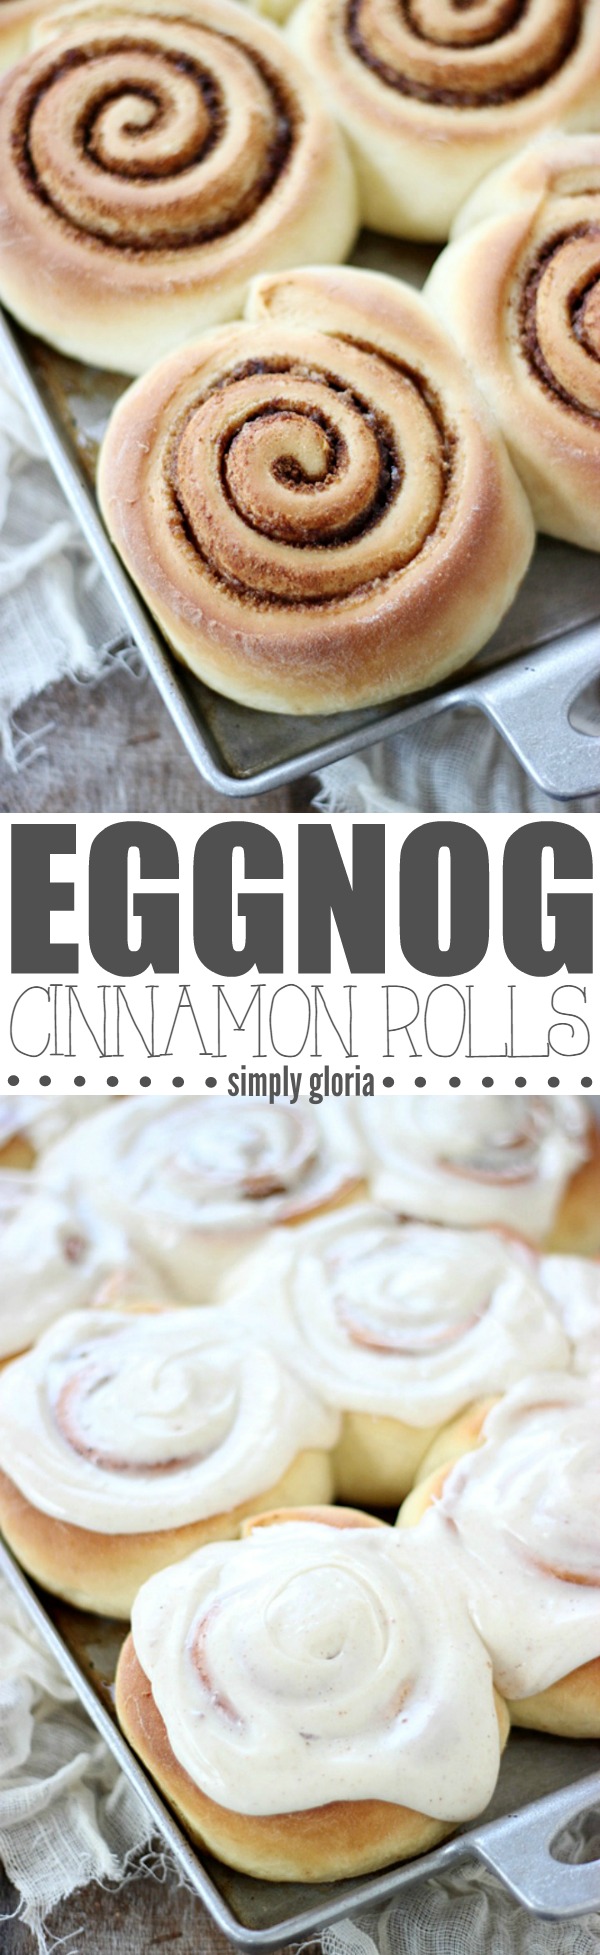 Eggnog Cinnamon Rolls with Eggnog Cream Cheese Frosting by SimplyGloria.com #cinnamonrolls #breakfast #Christmas